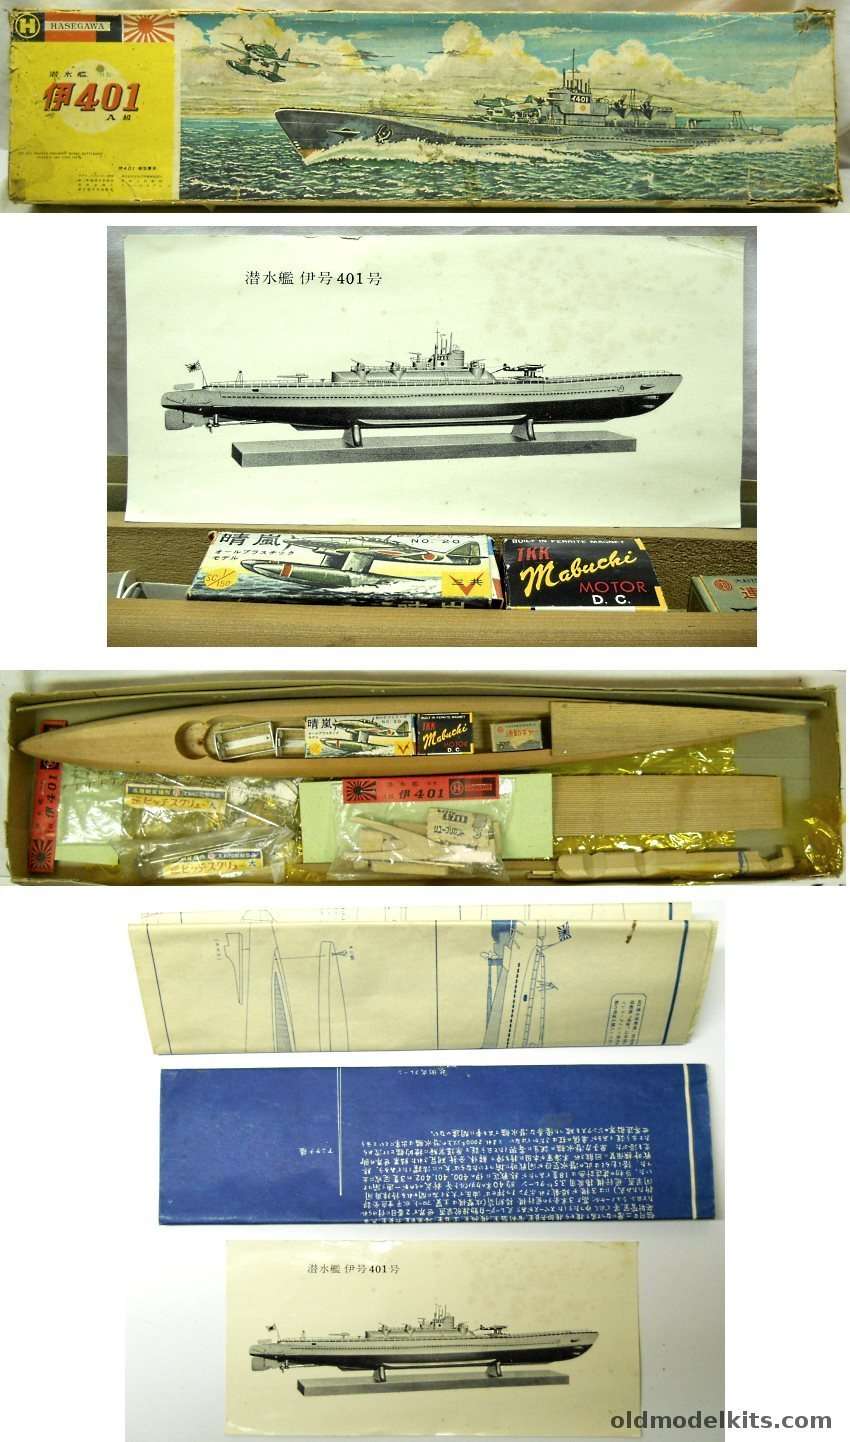 Hasegawa 1/160 I-401 Motorized Wood and Metal Submarine plastic model kit